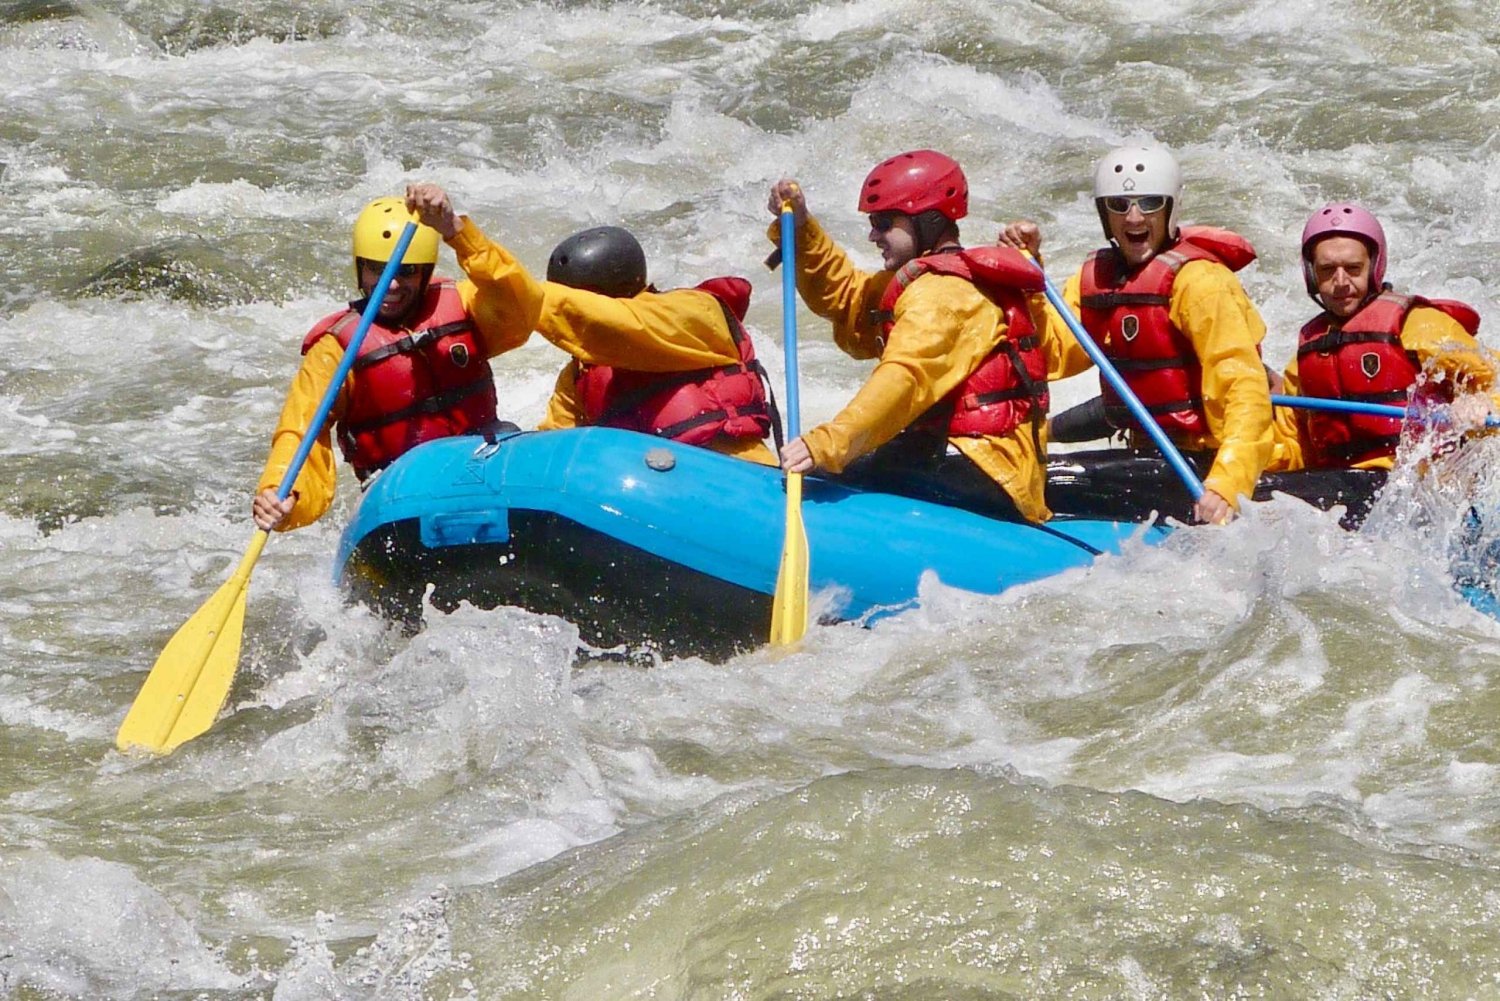 De cusco: aventura de rafting no rio dia inteiro